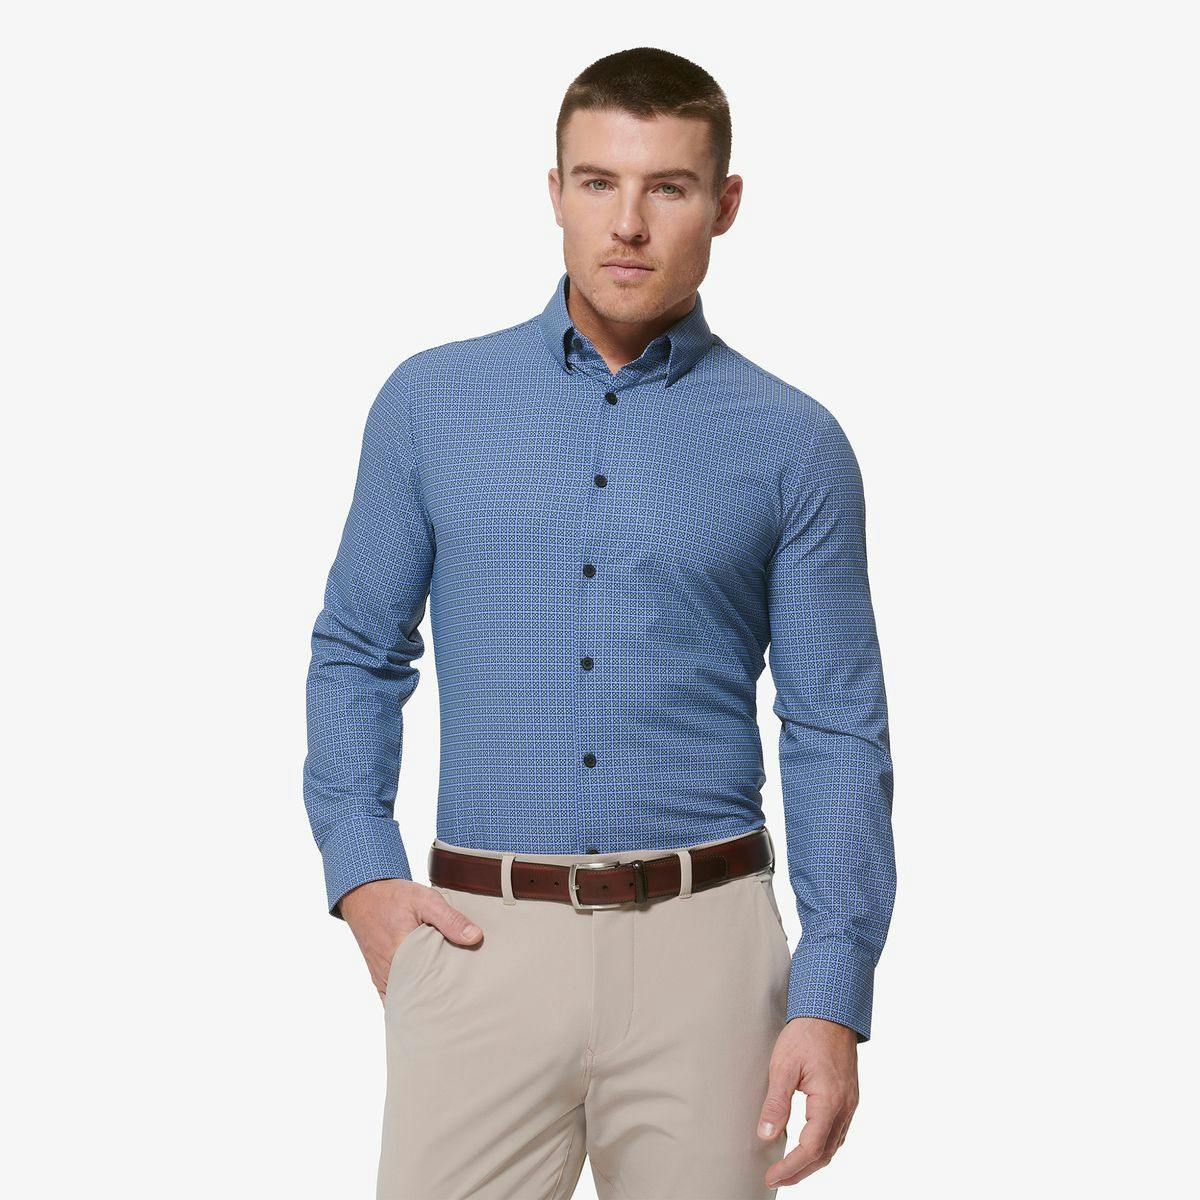 Monaco Dress Shirt - Product Image 1